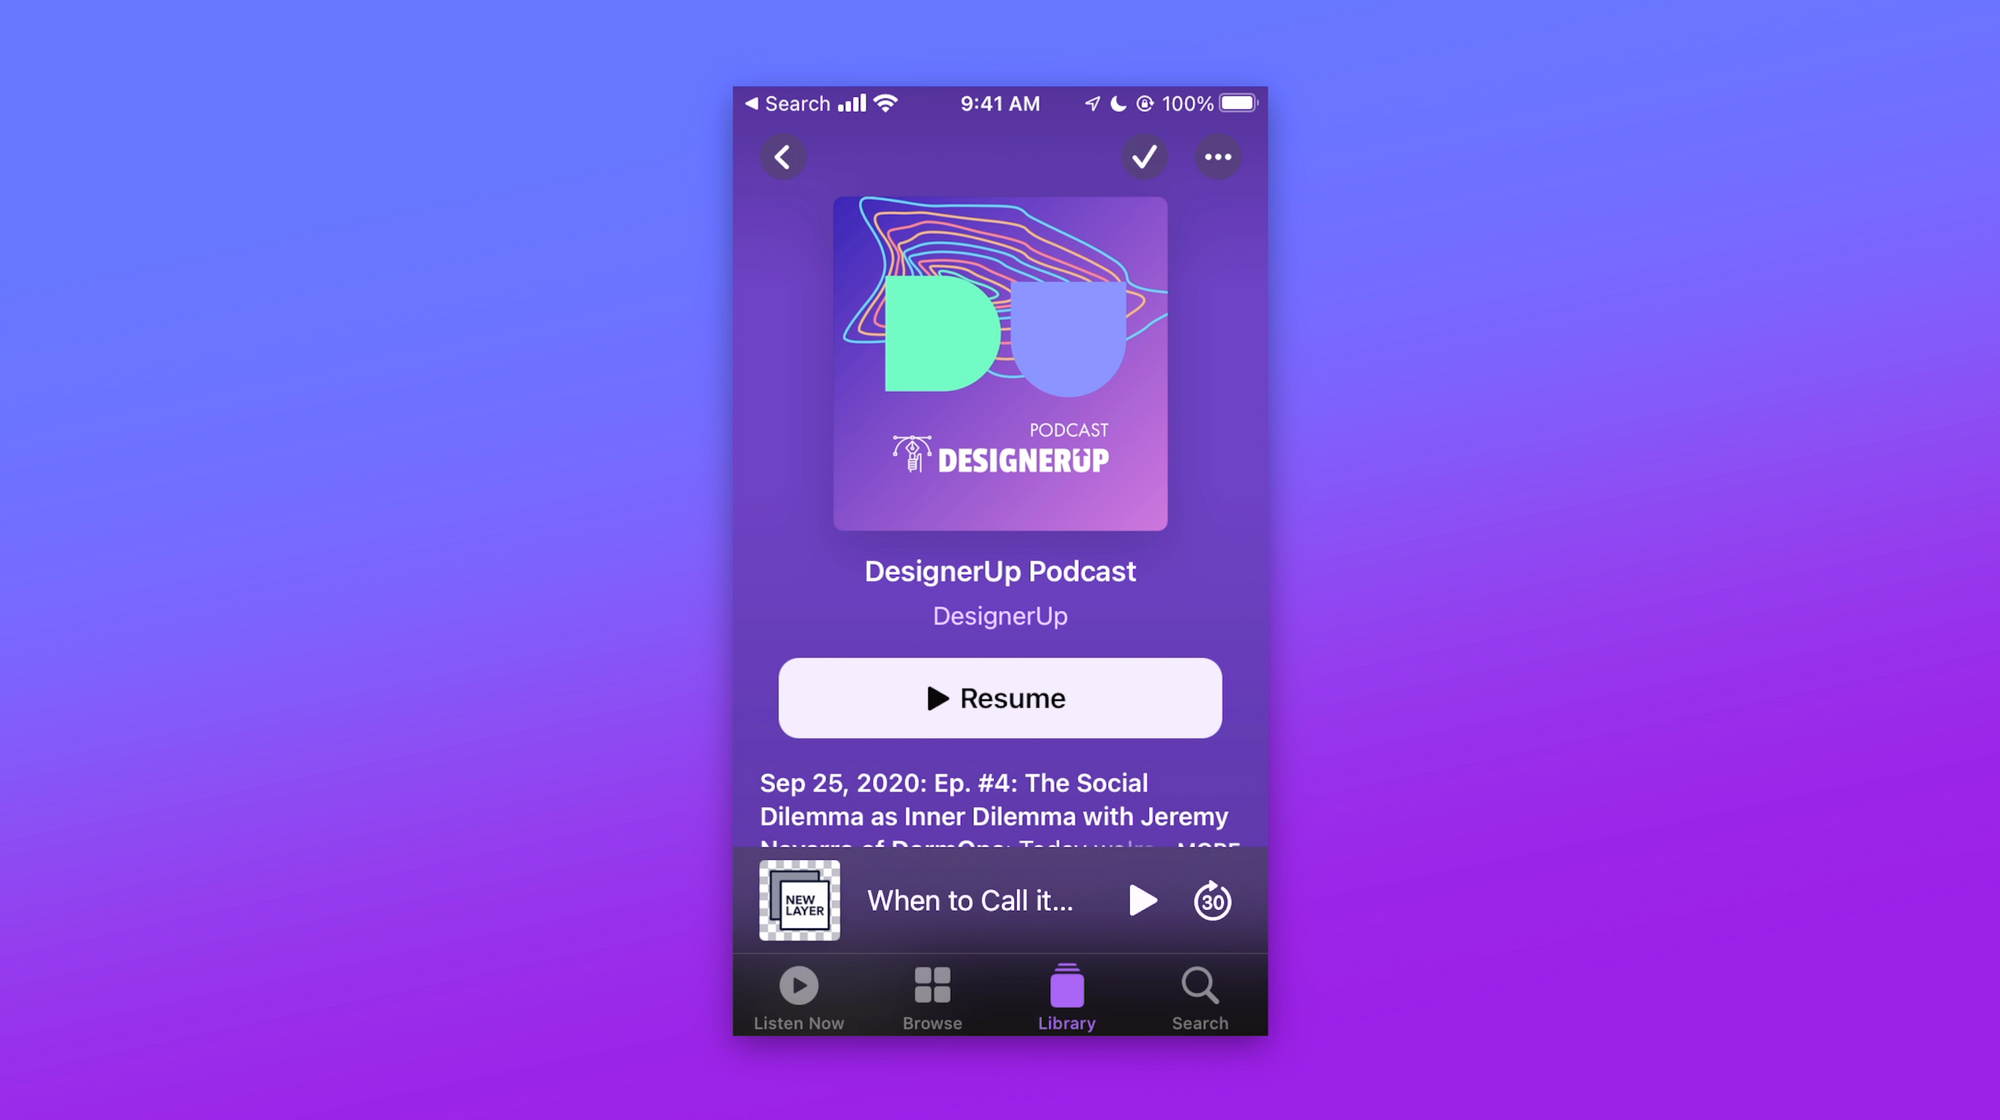 The DesignerUp Podcast Purple Cover